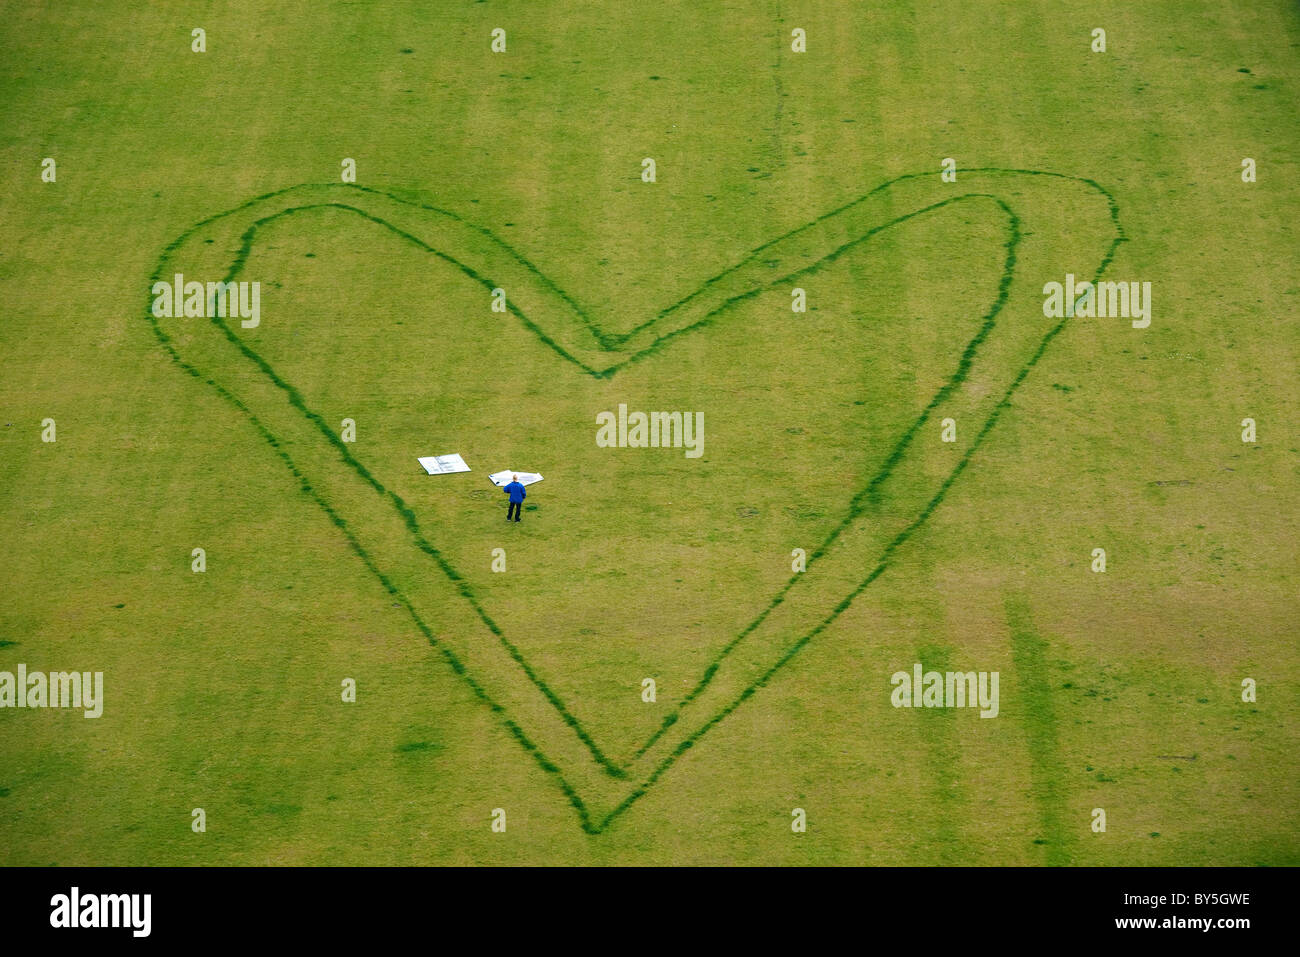 Allemagne, Berlin, coeur géant design sur pelouse avec une personne se tenant debout à l'intérieur Banque D'Images